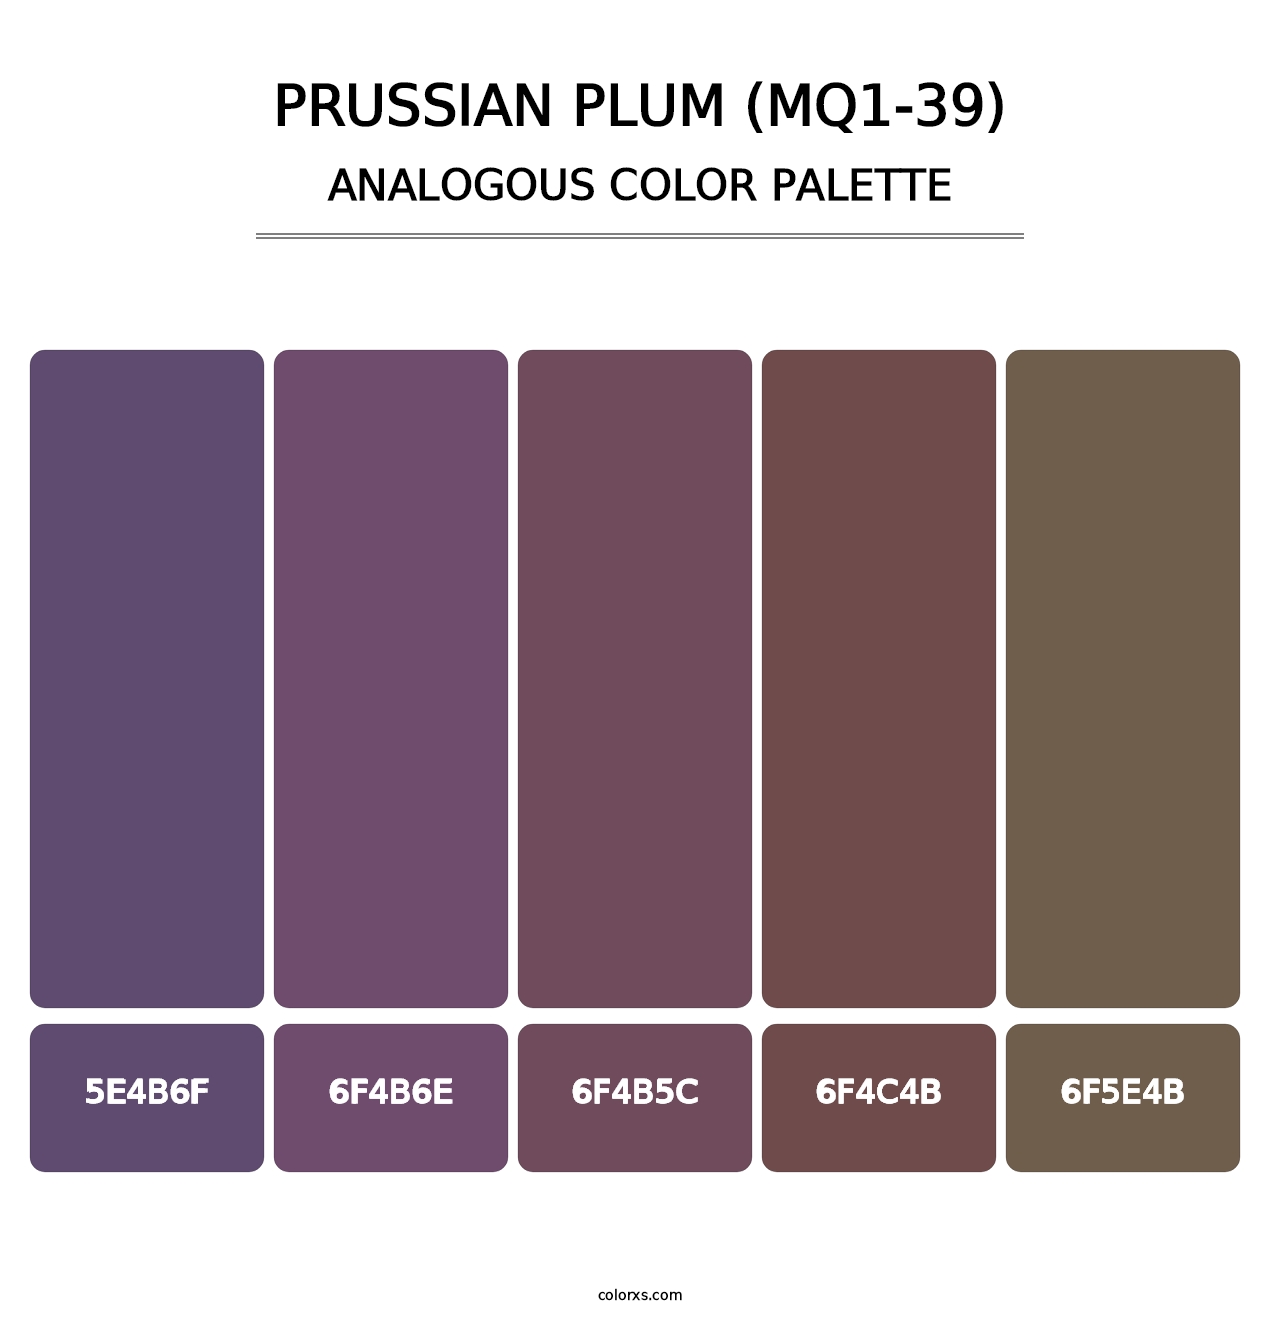 Prussian Plum (MQ1-39) - Analogous Color Palette